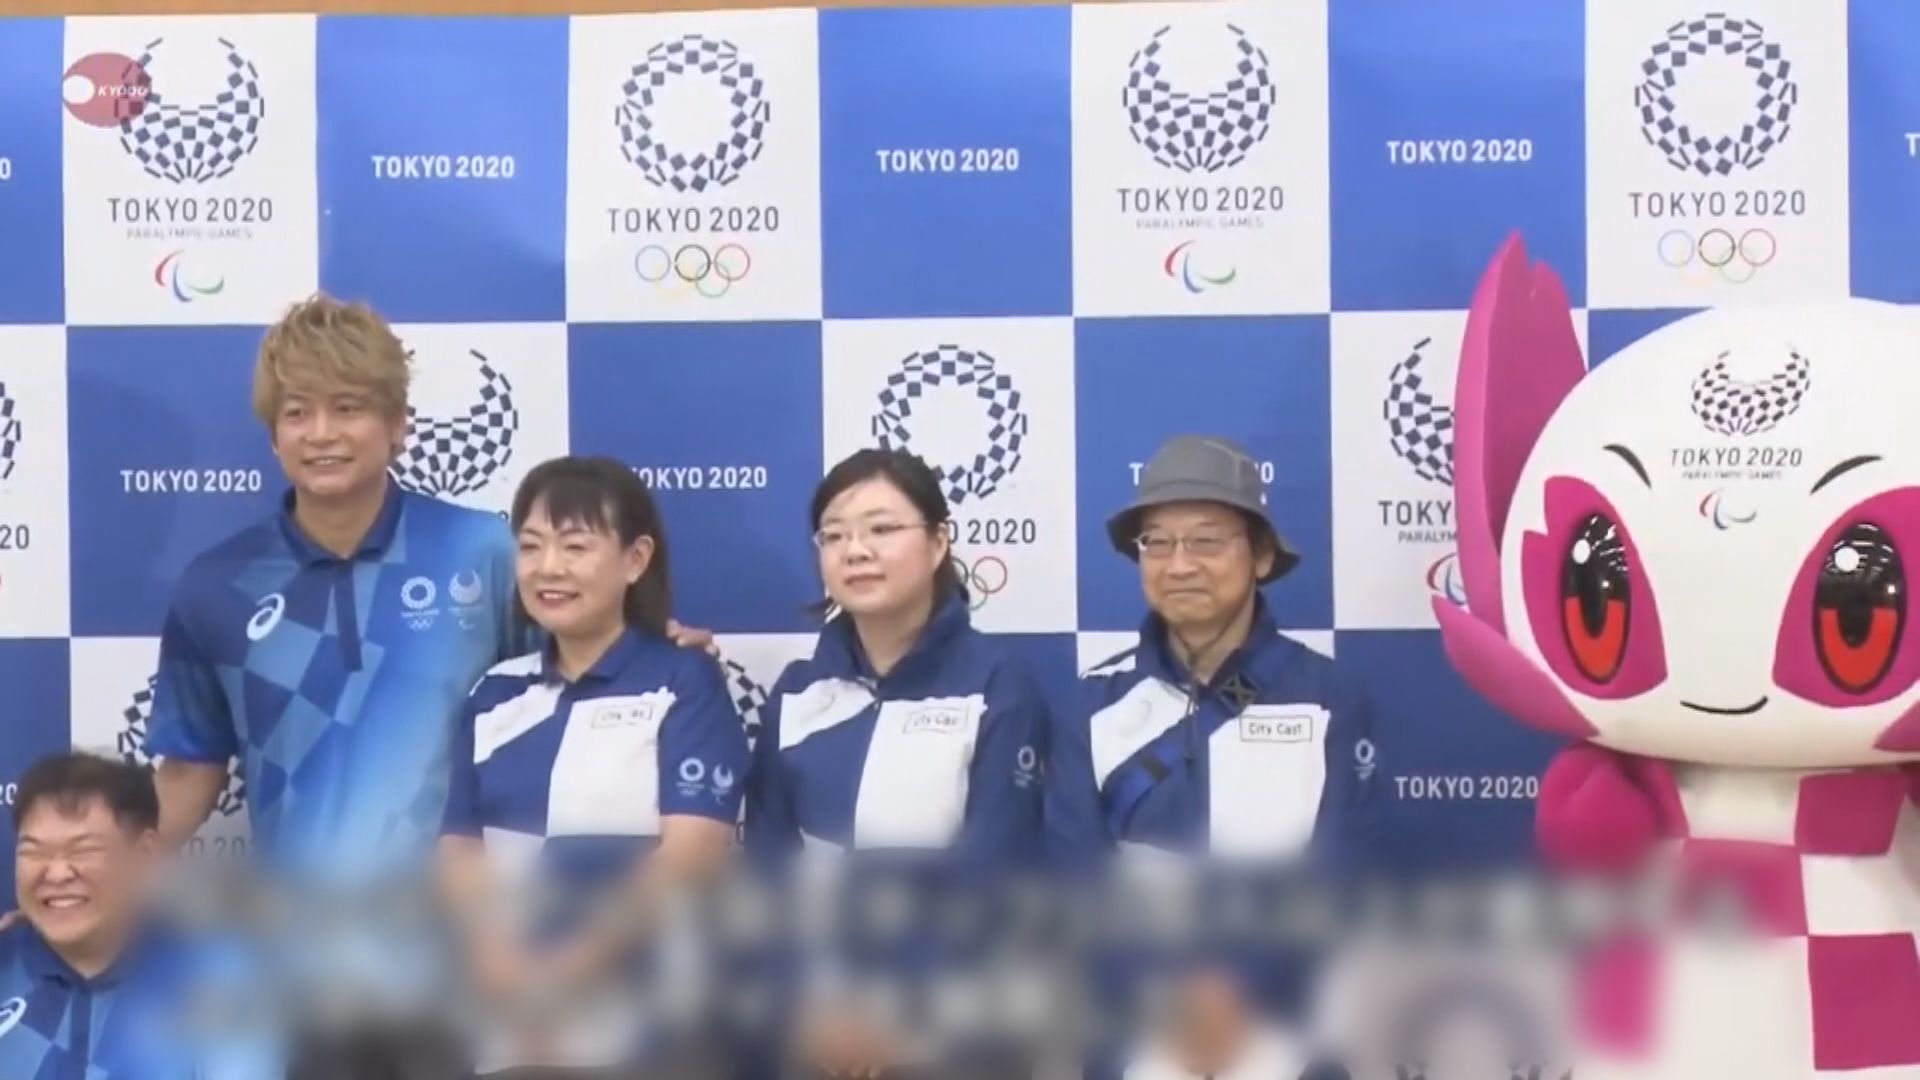 東京奧運逾萬套義工制服未有分發